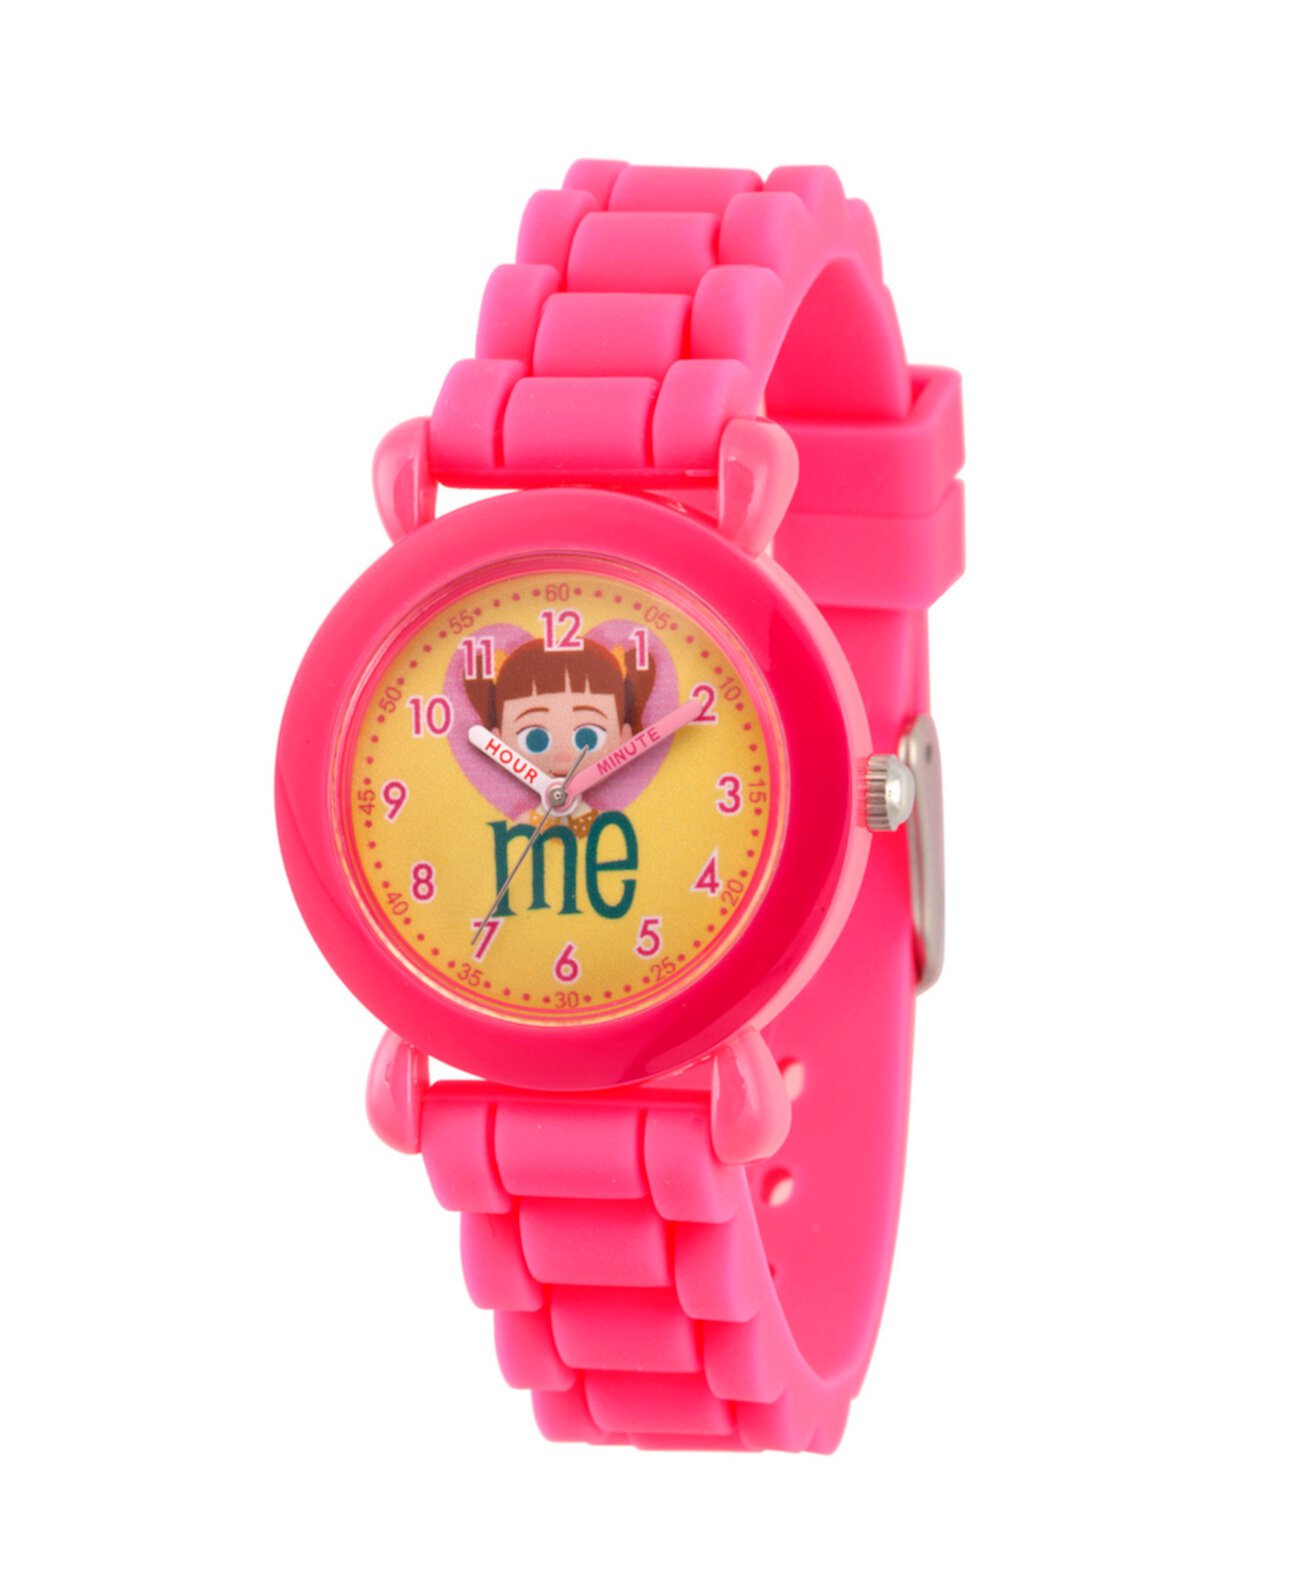 Girl's Disney Toy Story 4 Габби Габби Розовые пластиковые часы с учителями для часов 32 мм Ewatchfactory